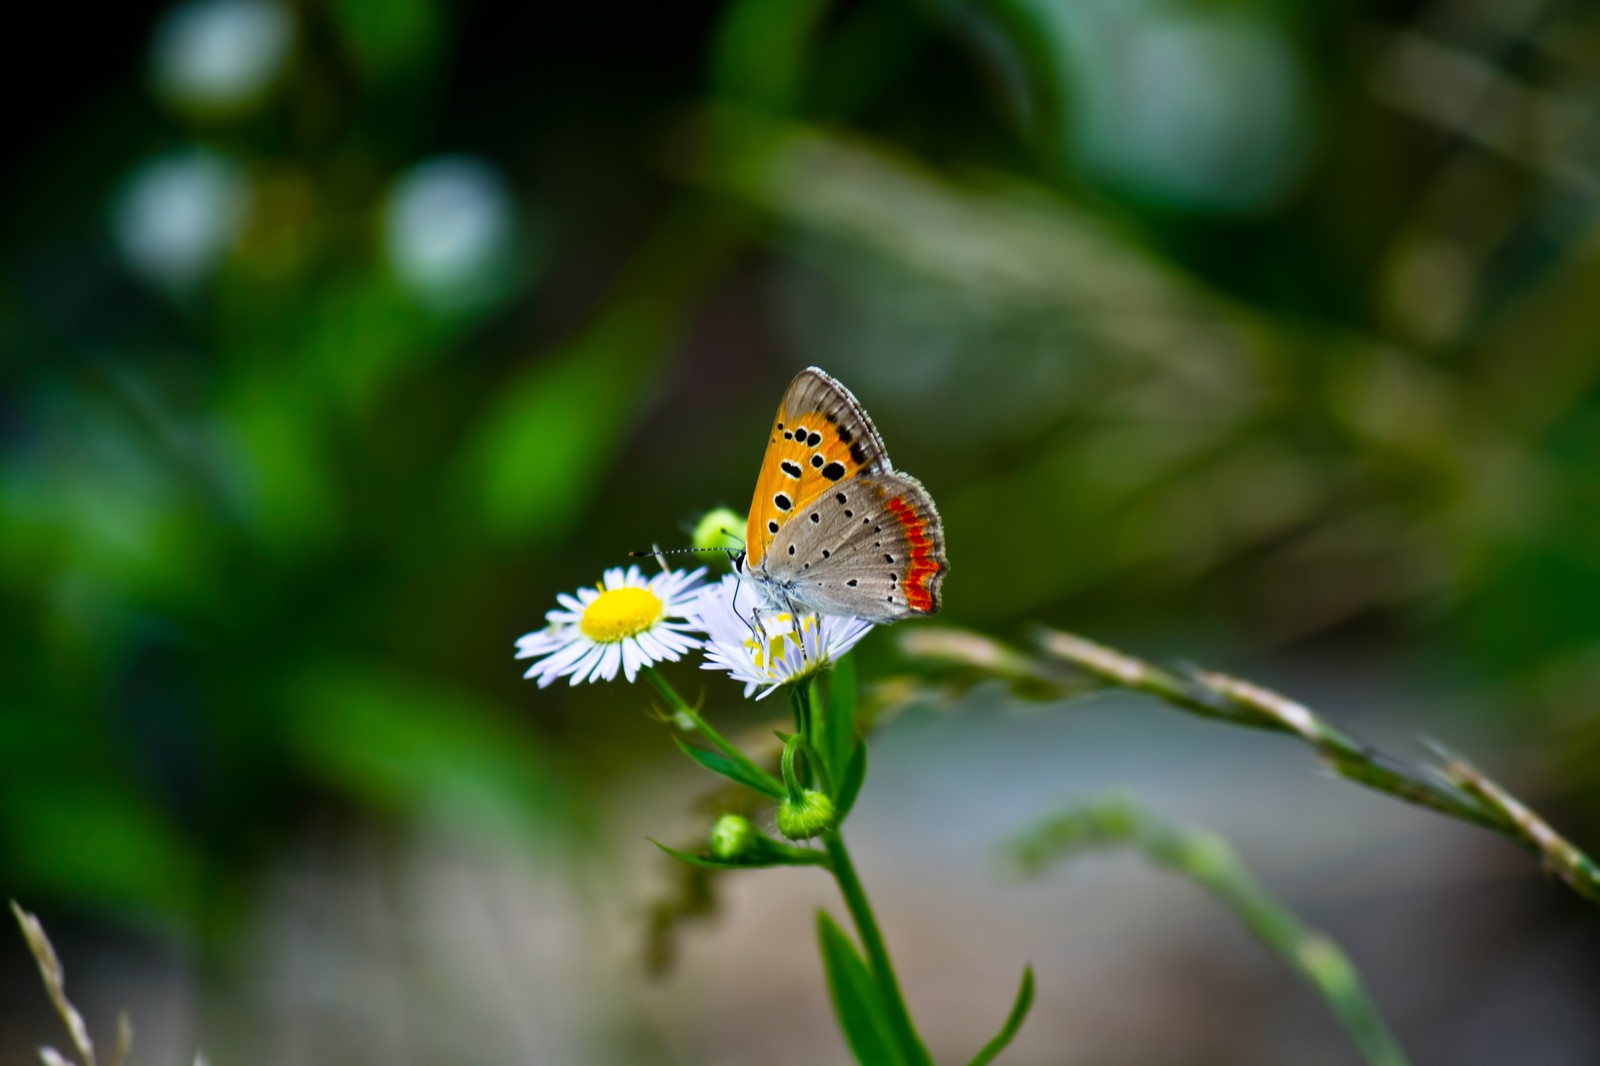 花の蜜を吸うベニシジミ（画面中央、小さな蝶がヒメジョオンのような野菊のような小さな花に止まり蜜を吸っている。背景は草原が淡く残像のように映る）